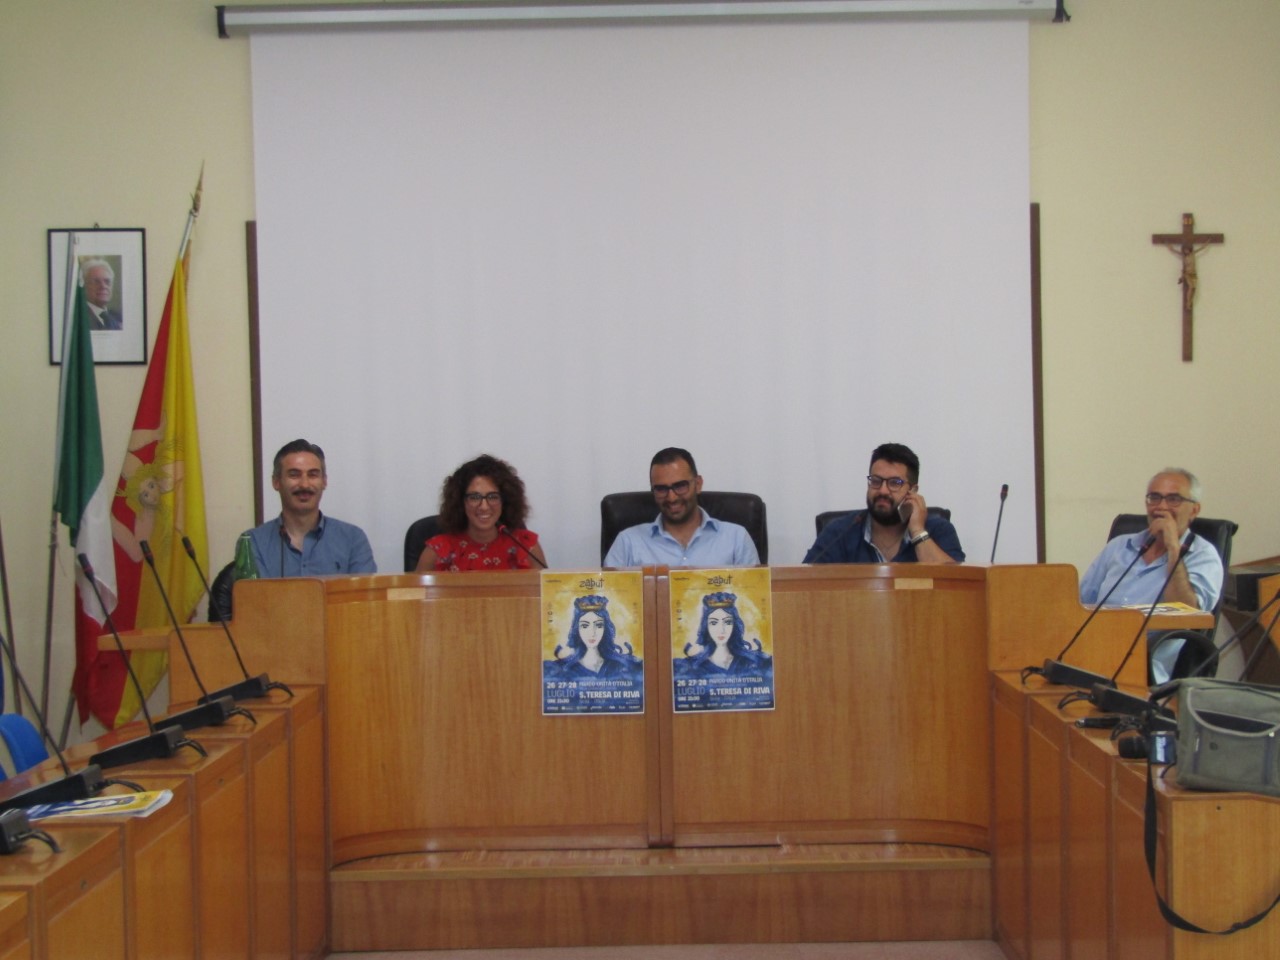 Santa Teresa di Riva è la location che ospita l'edizione 2019 dello Zabut International Festival, presentato in conferenza stampa dal sindaco Danilo Lo Giudice